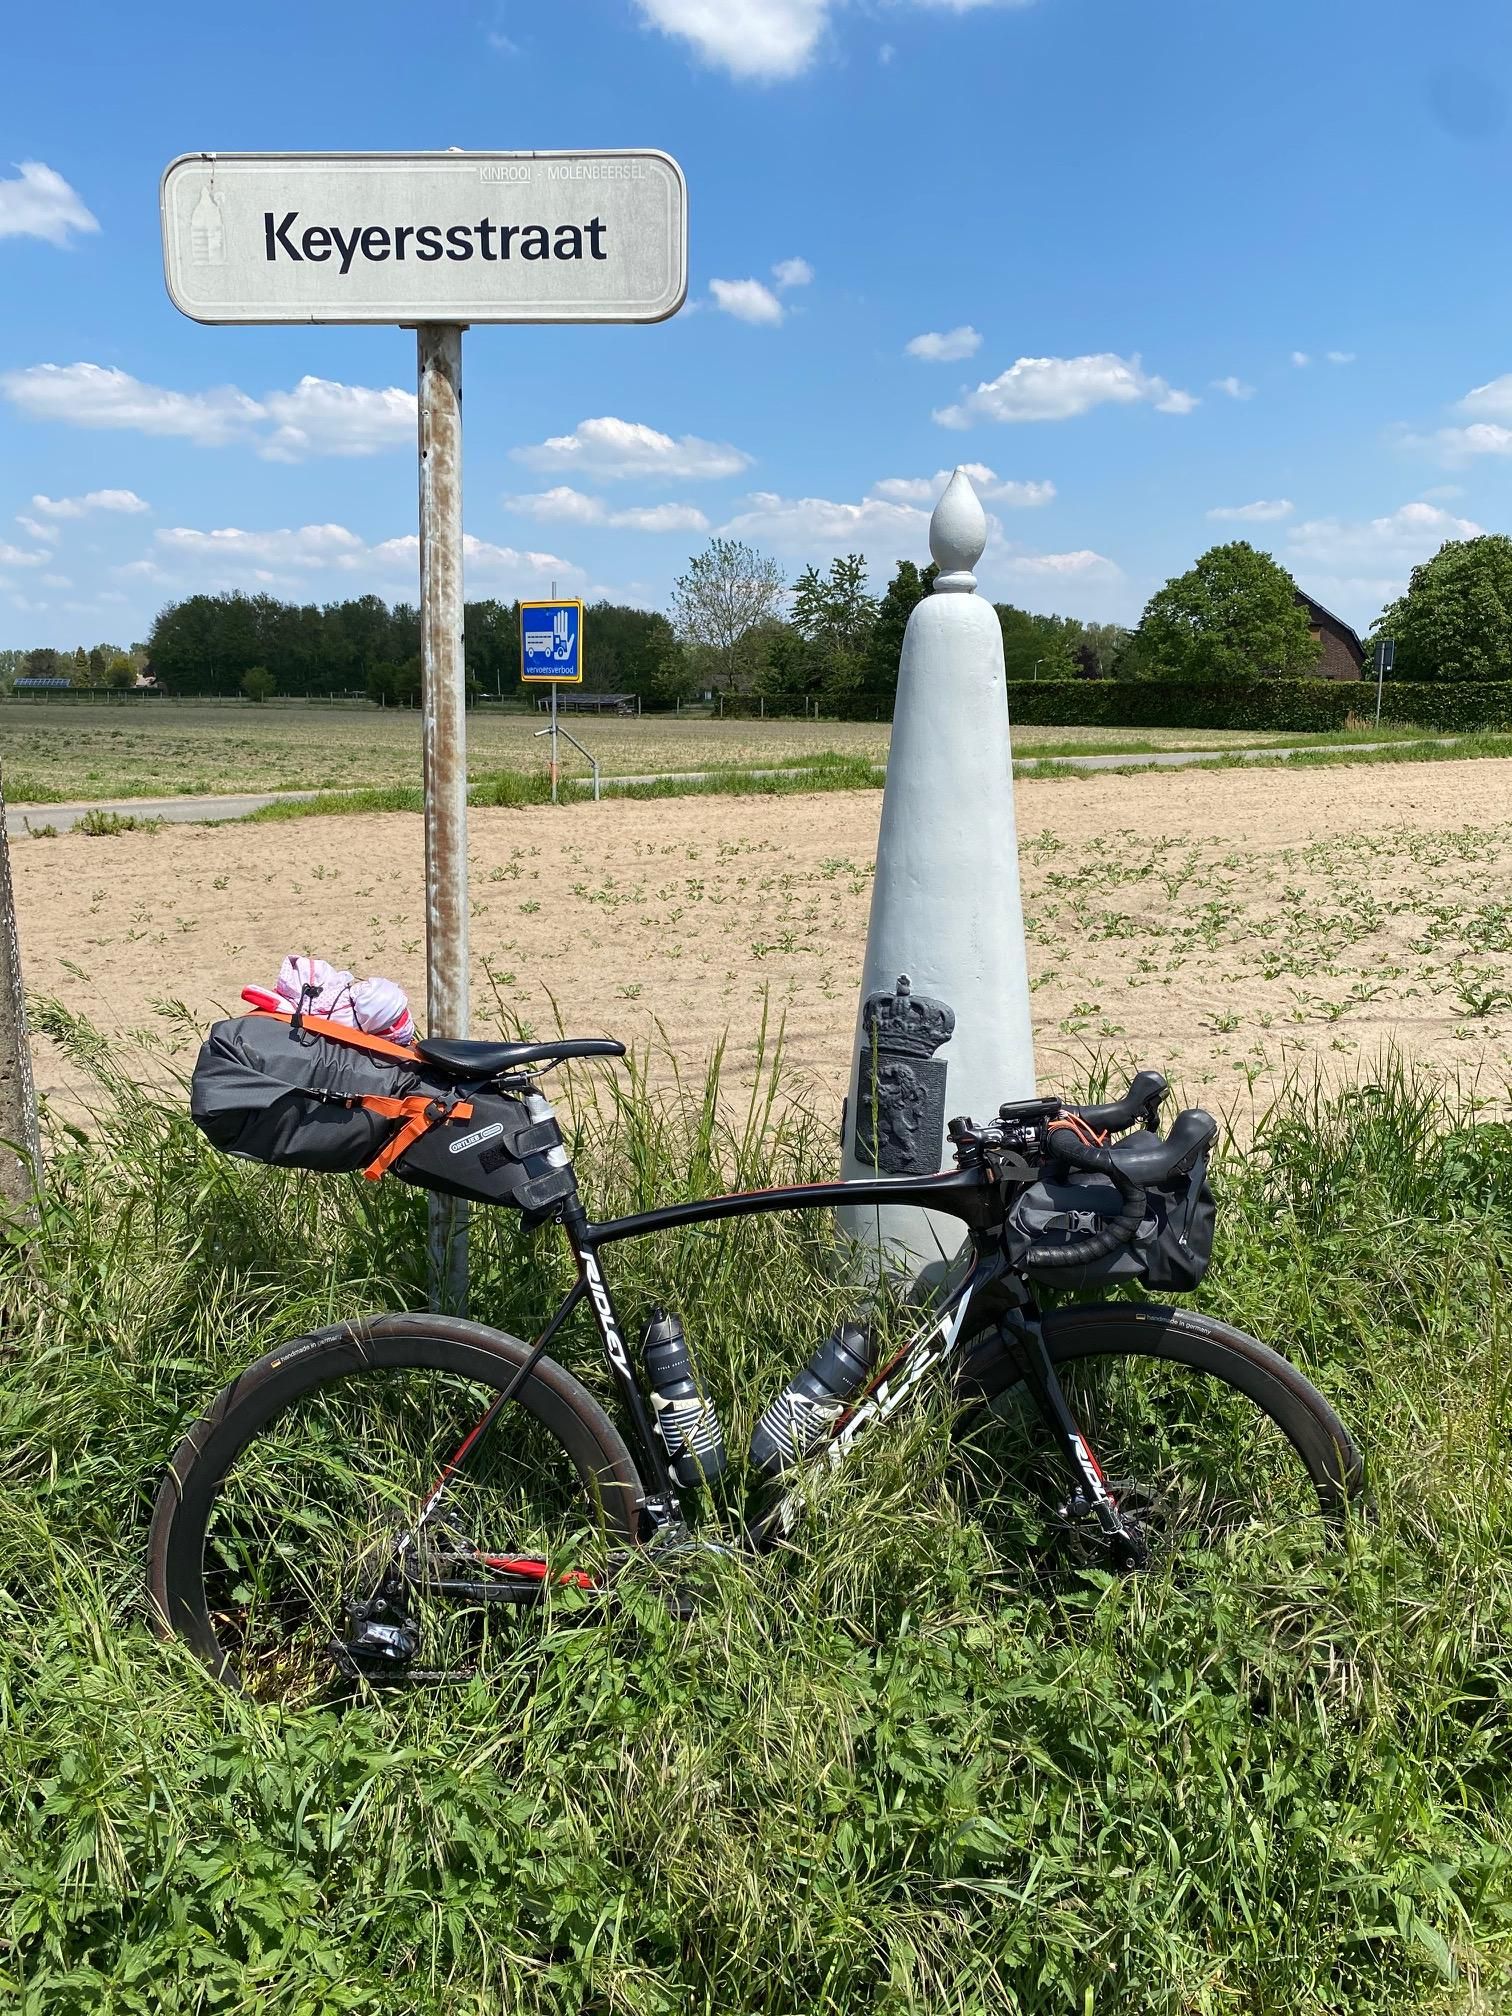 CSG'ers fietsen Rondje Nederland voor KWF